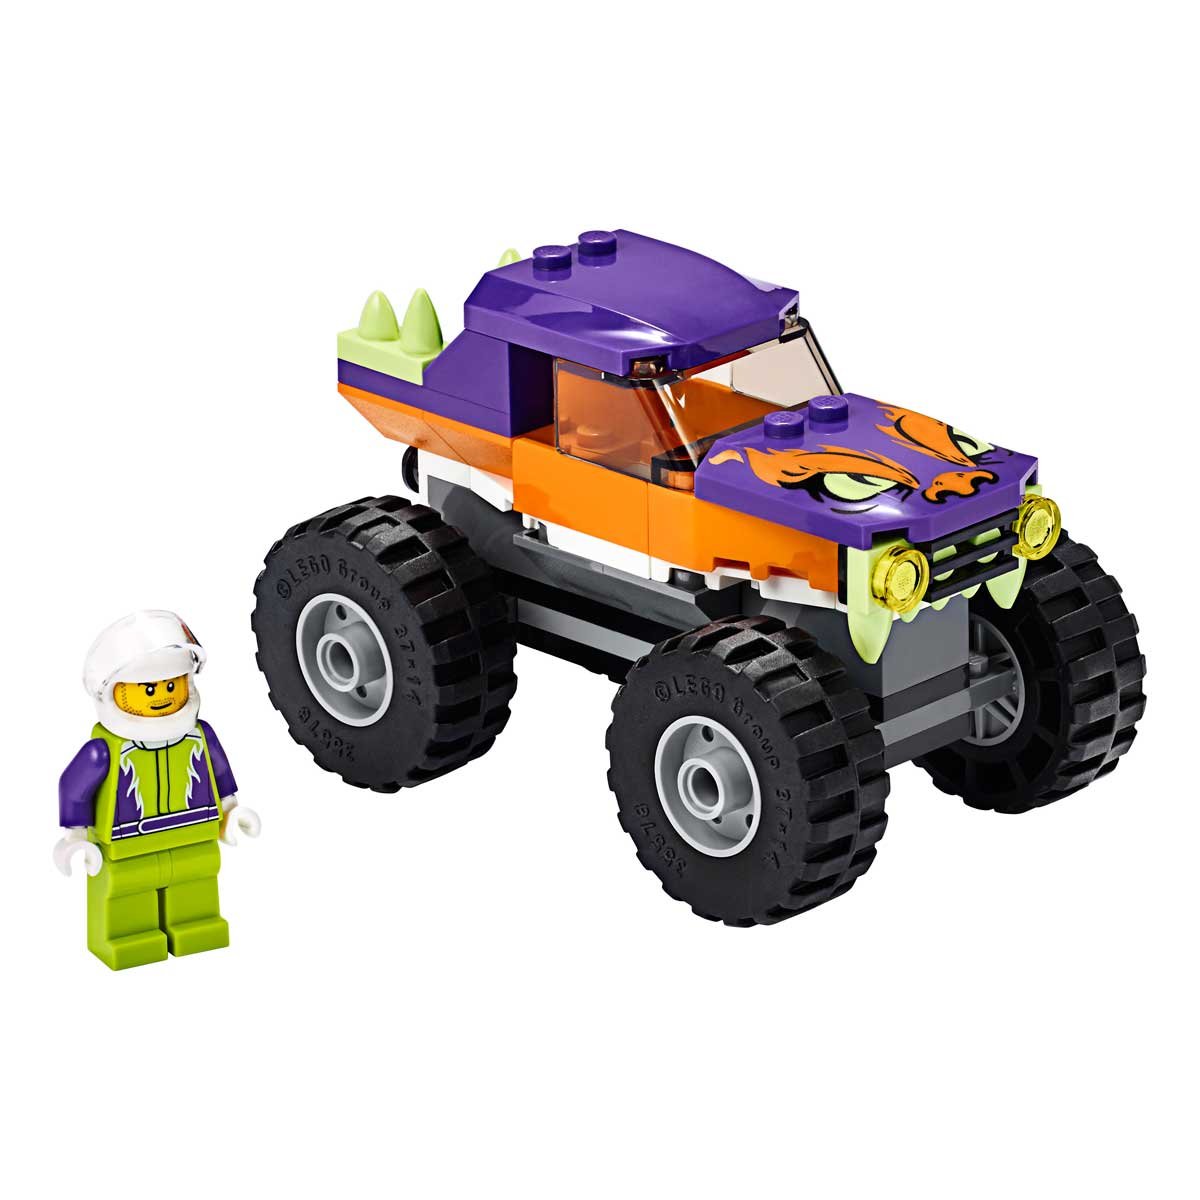 Camión Monstruo Lego City